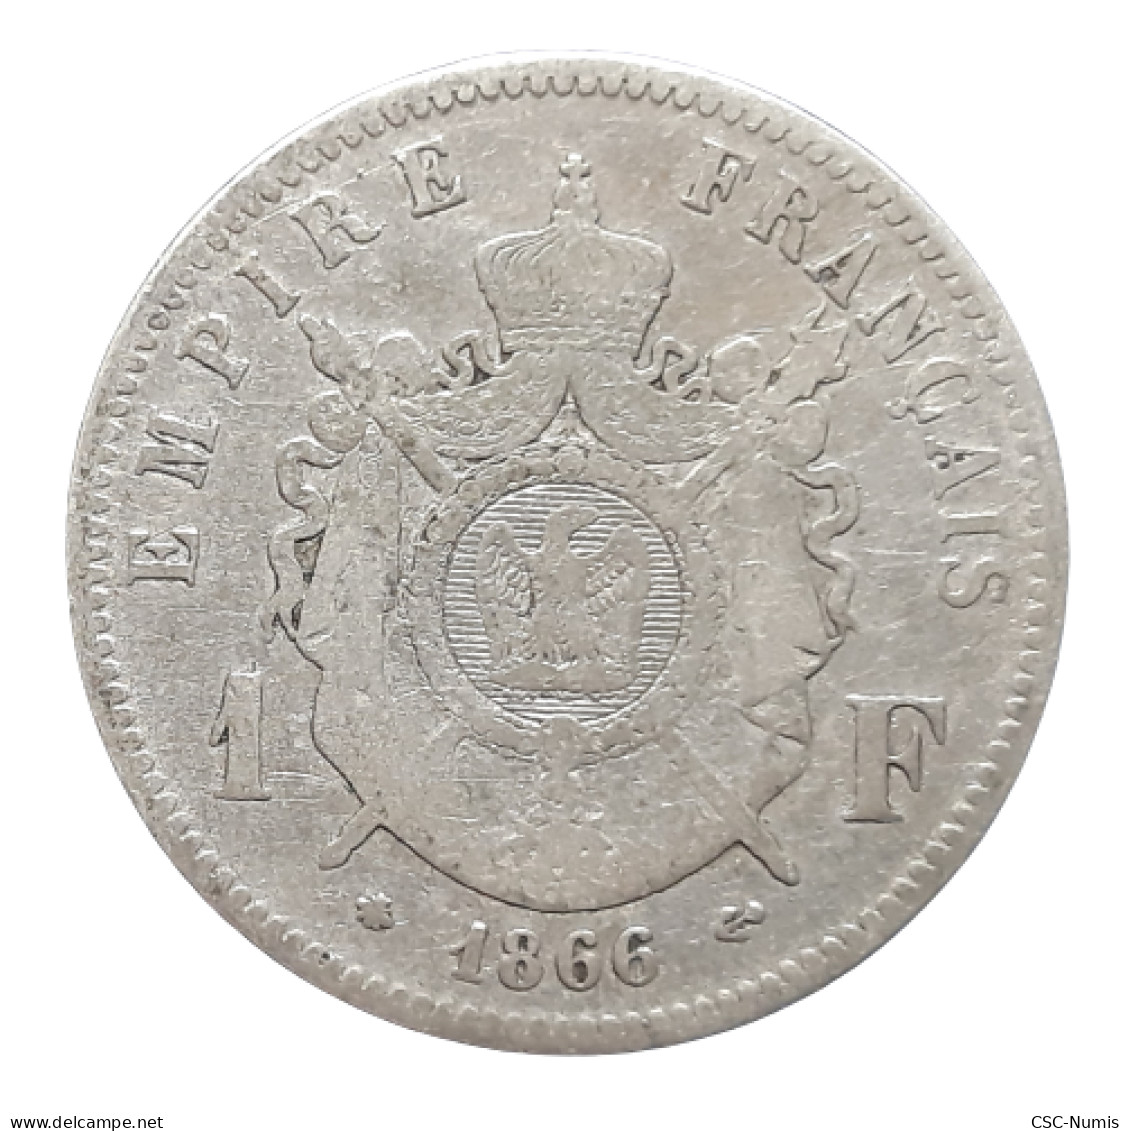 (CG#037) - Napoléon III - 1 Franc 1866 A, Paris - 1 Franc